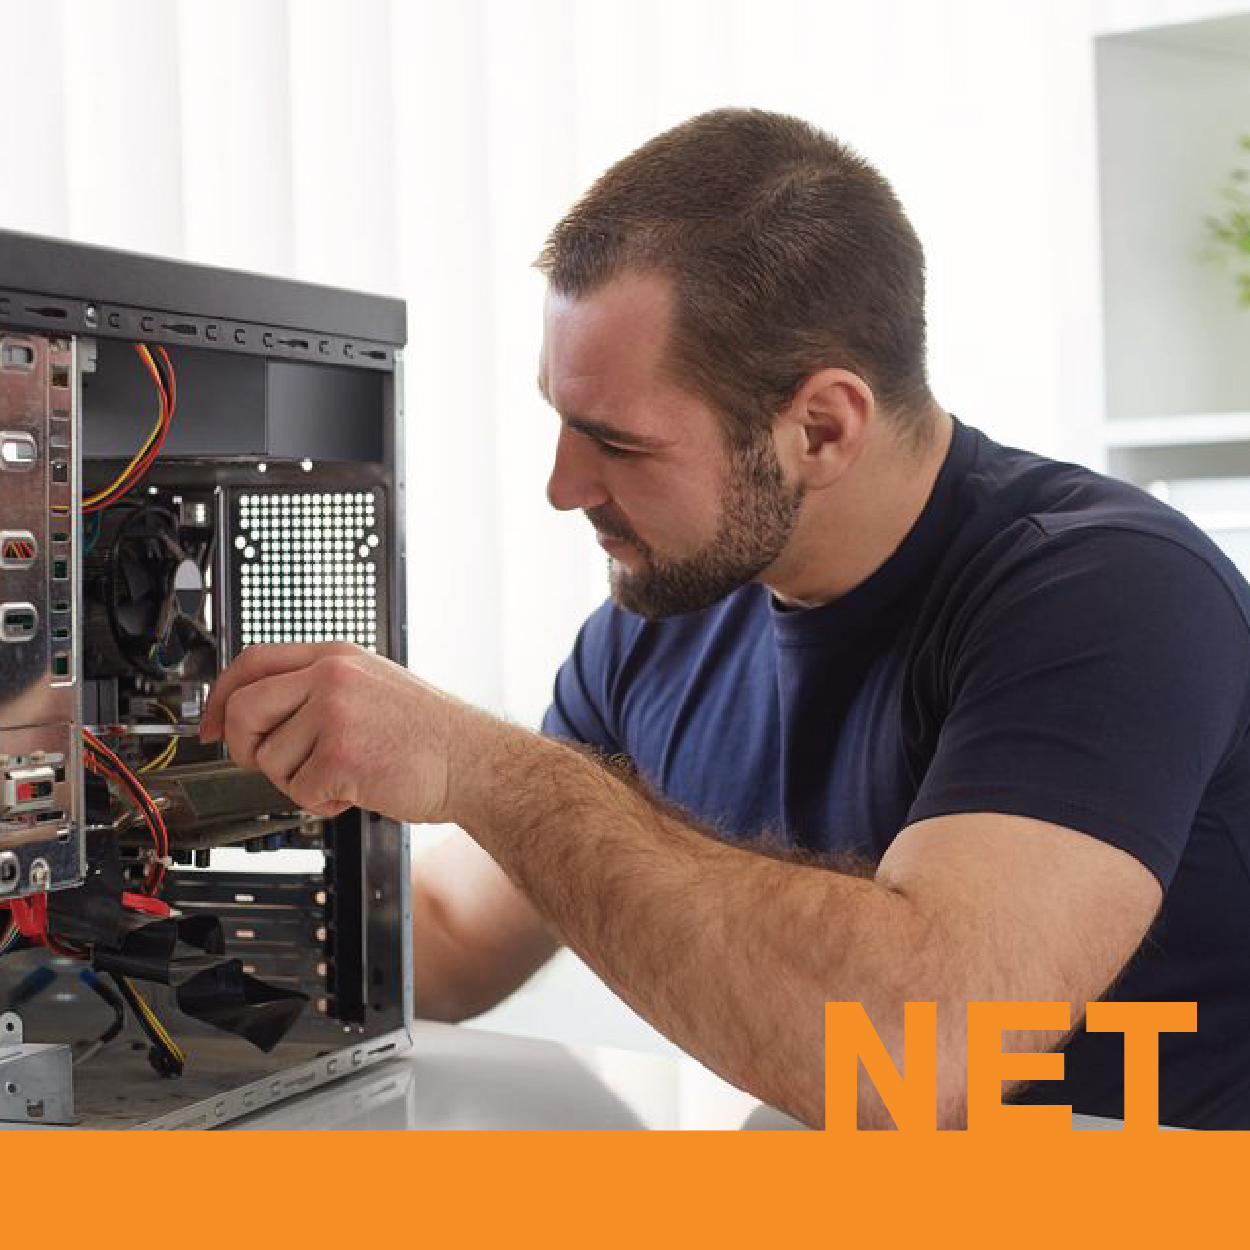 NET : หลักสูตรช่างคอมพิวเตอร์เครือข่าย